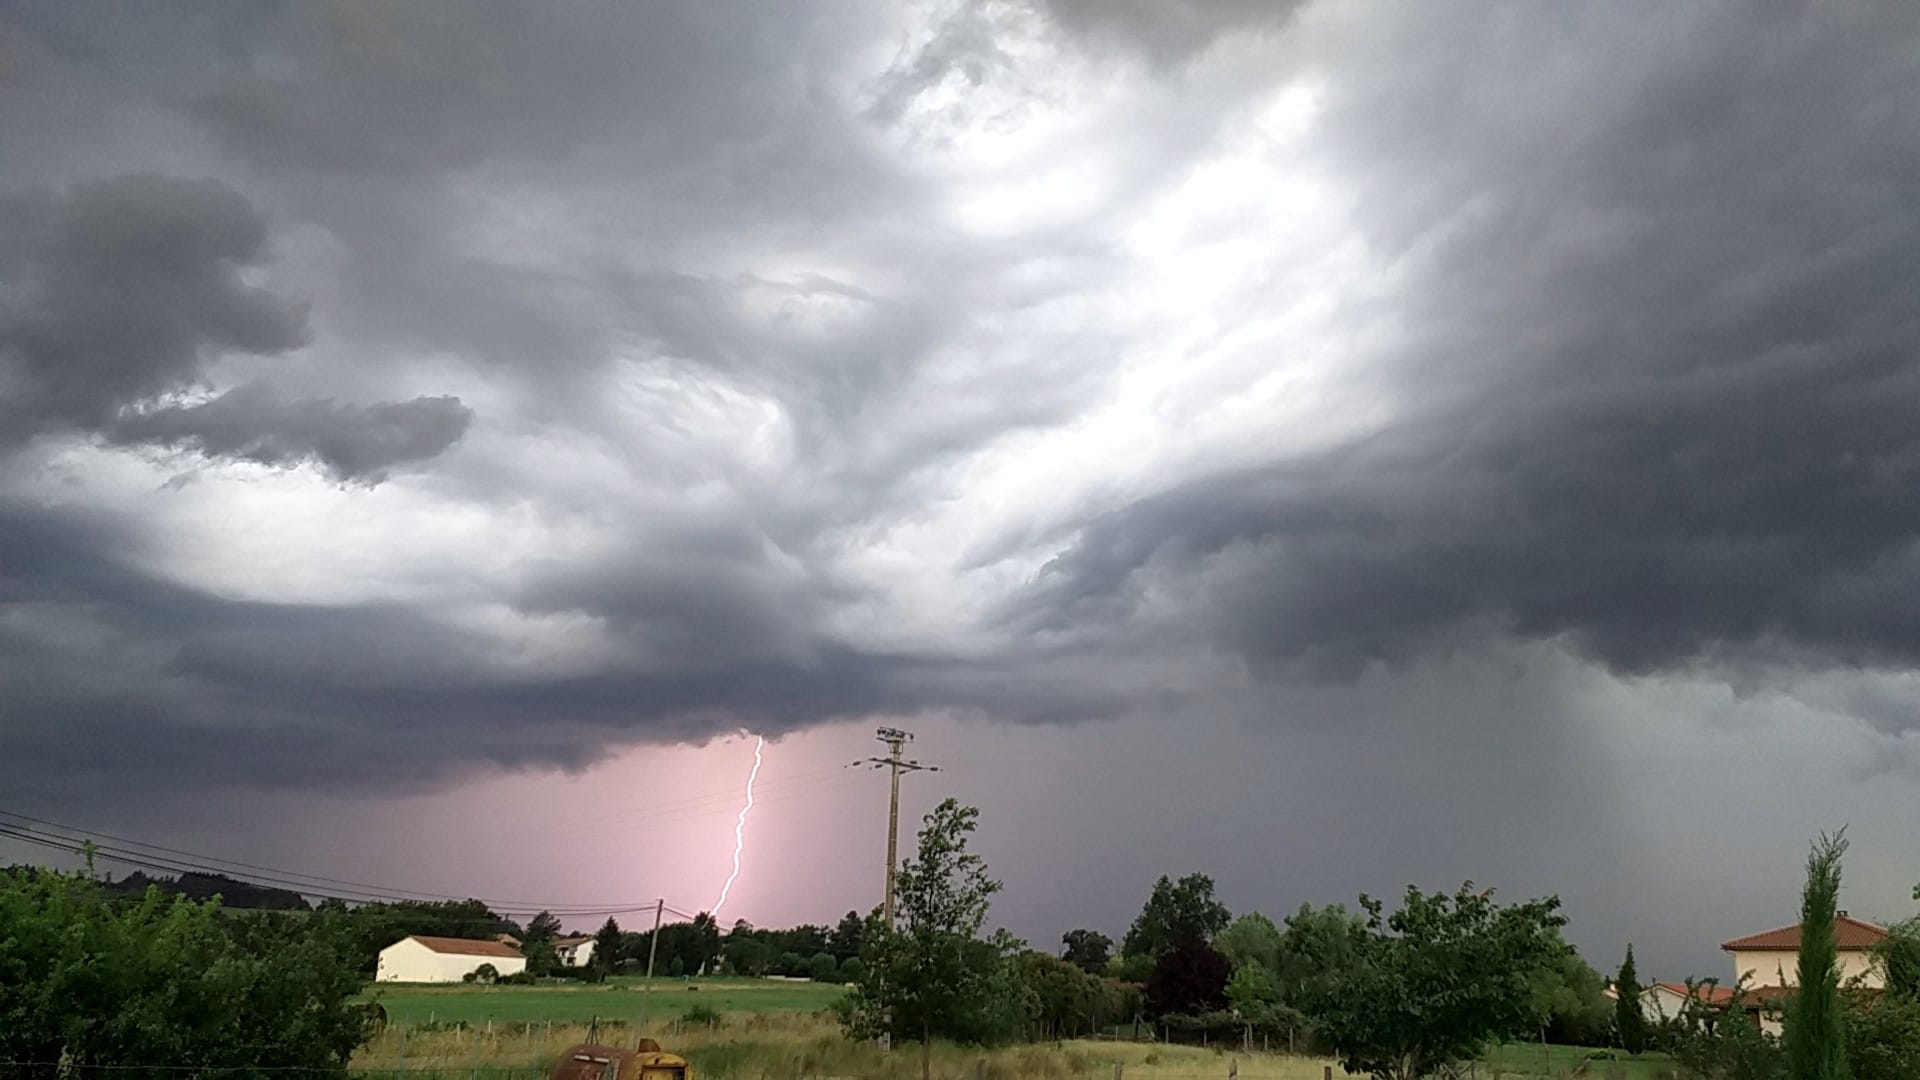 Cellule orageuse en approche le 26 juin 2020 sur Saint Cyr de Favieres dans le 42. - 26/06/2020 19:15 - Sylvain Troncy